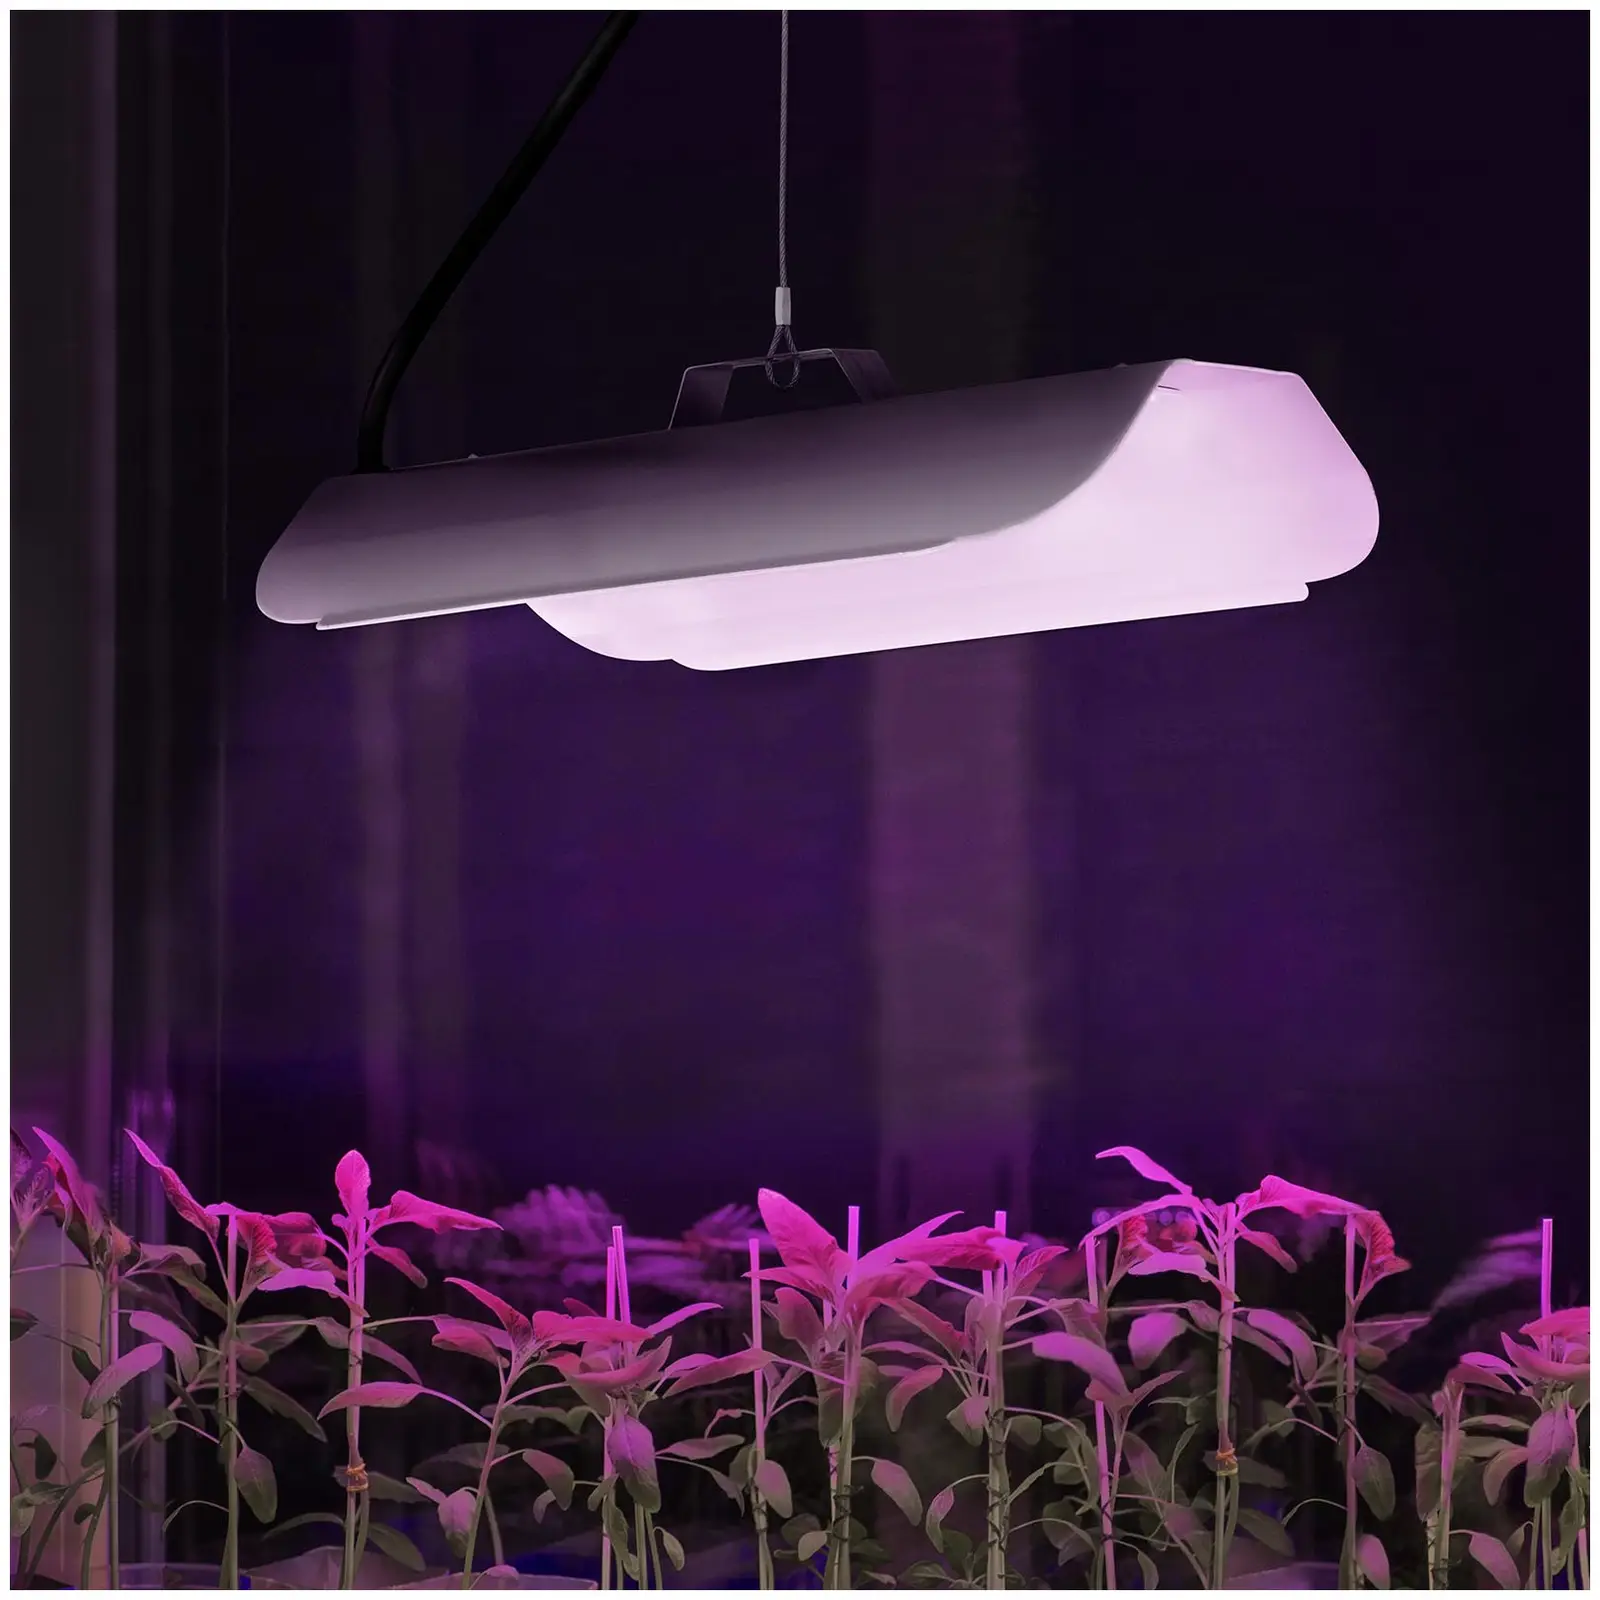 Odlingslampa - Fullt spektrum - 50 W - 136 LED - 3000 Lumen